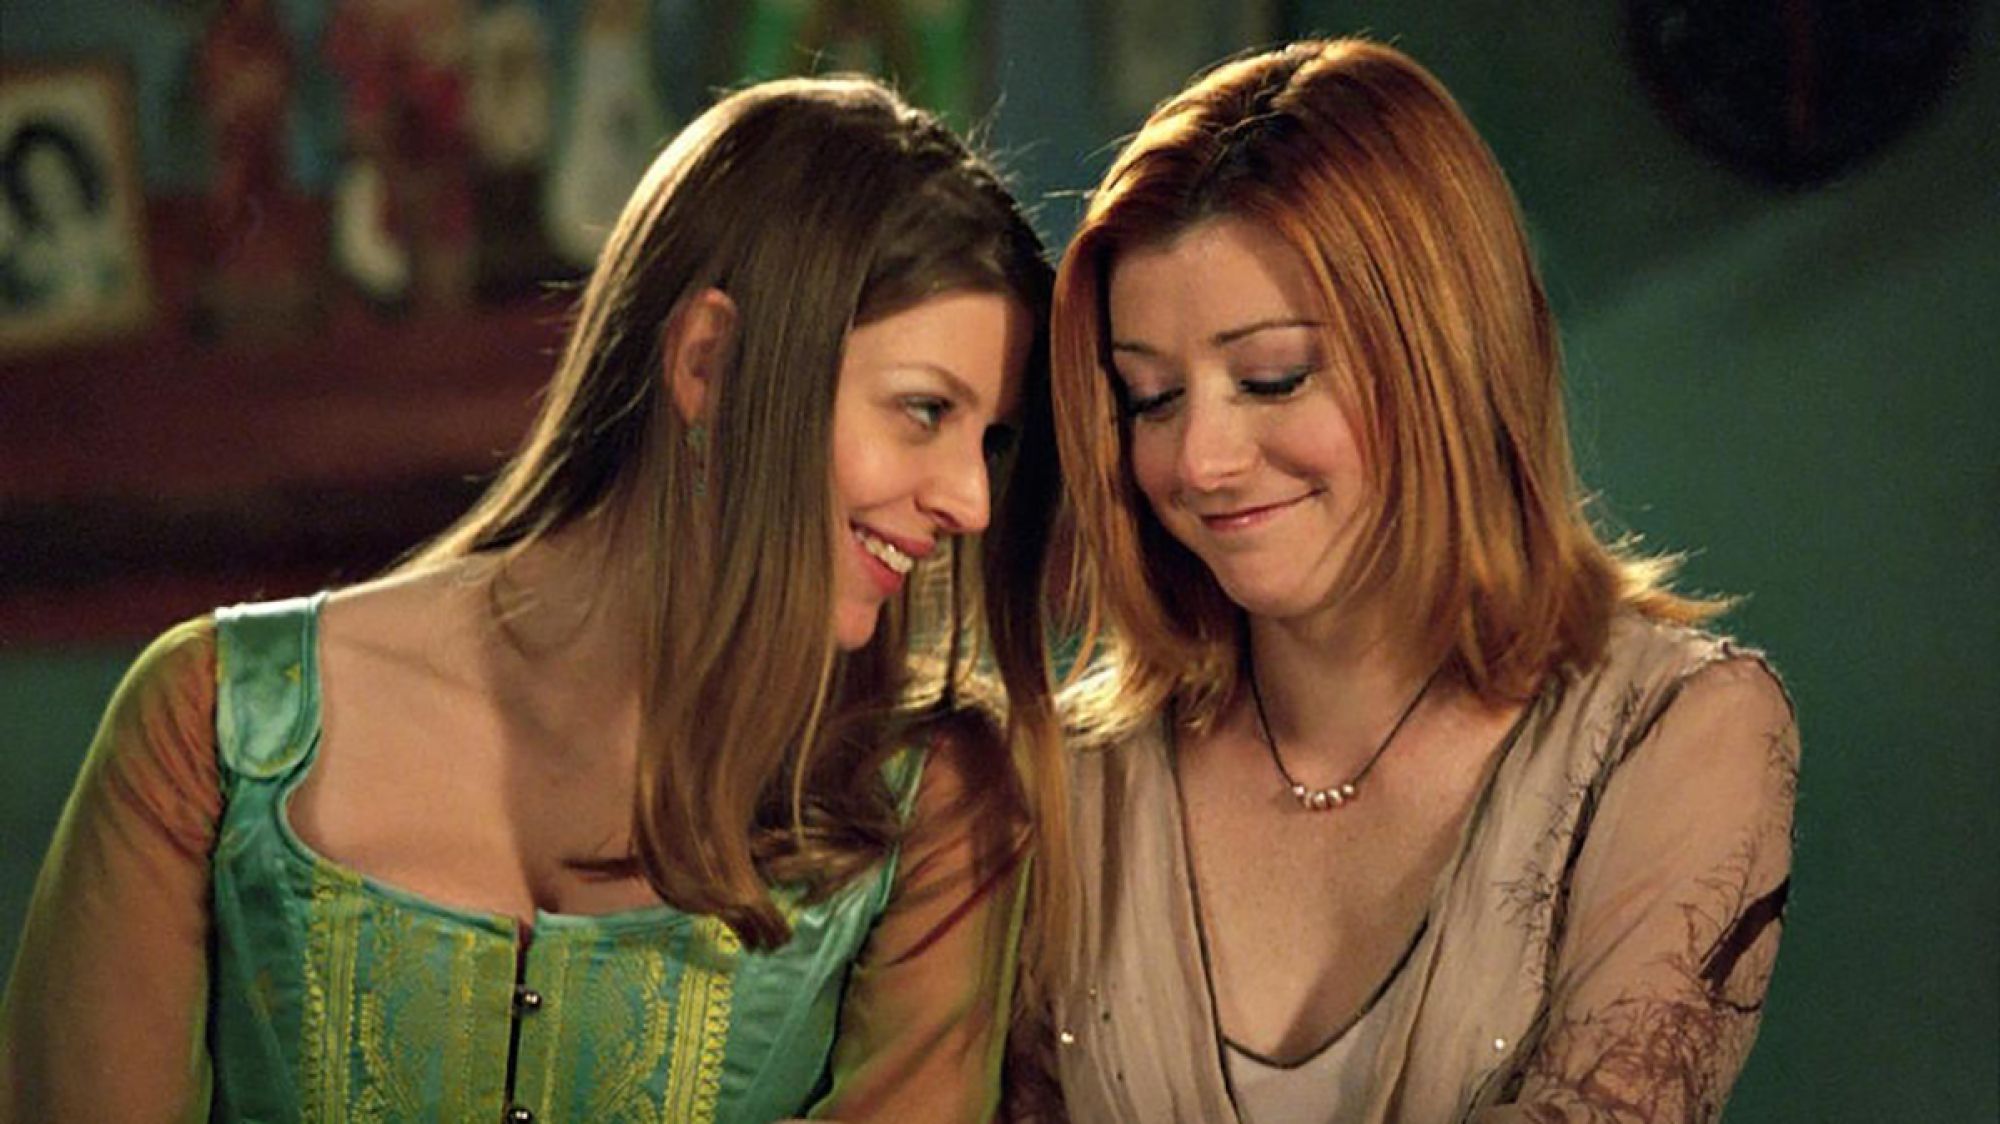 Tara and Willow flirt in Buffy the Vampire Slayer